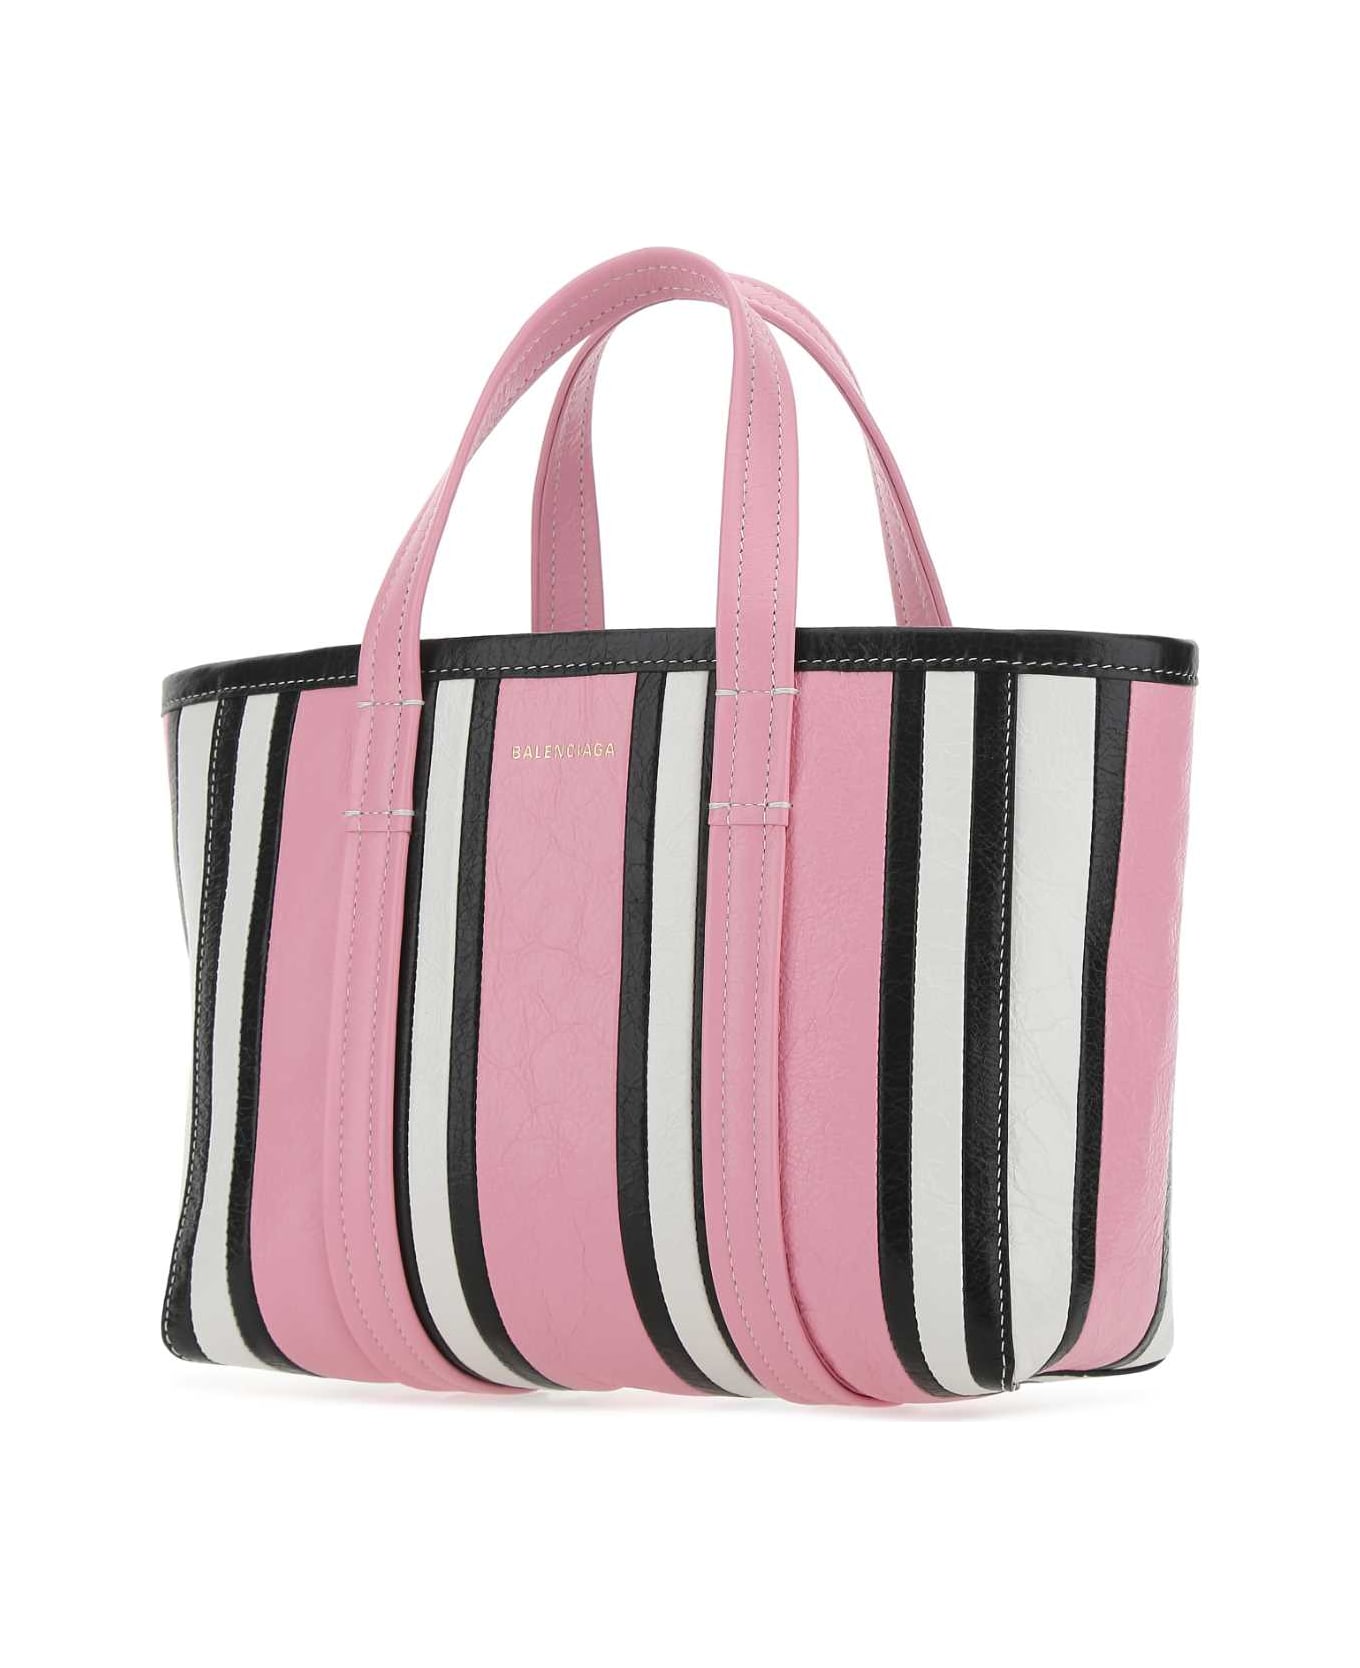 Balenciaga Multicolor Leather Small Barbes Shopping Bag - 5960